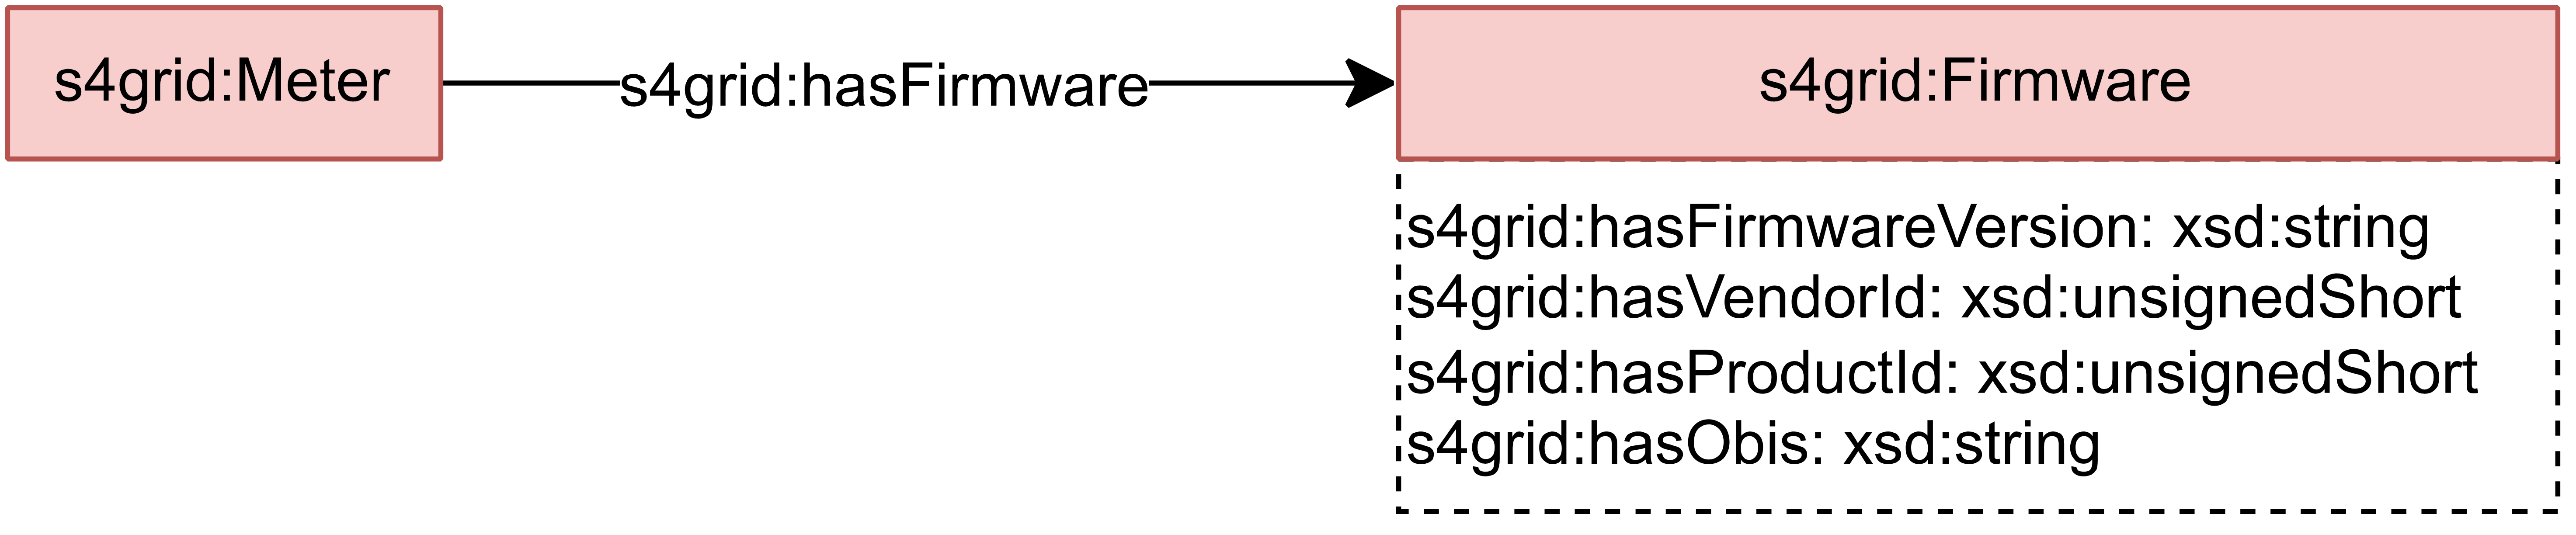 Firmware model